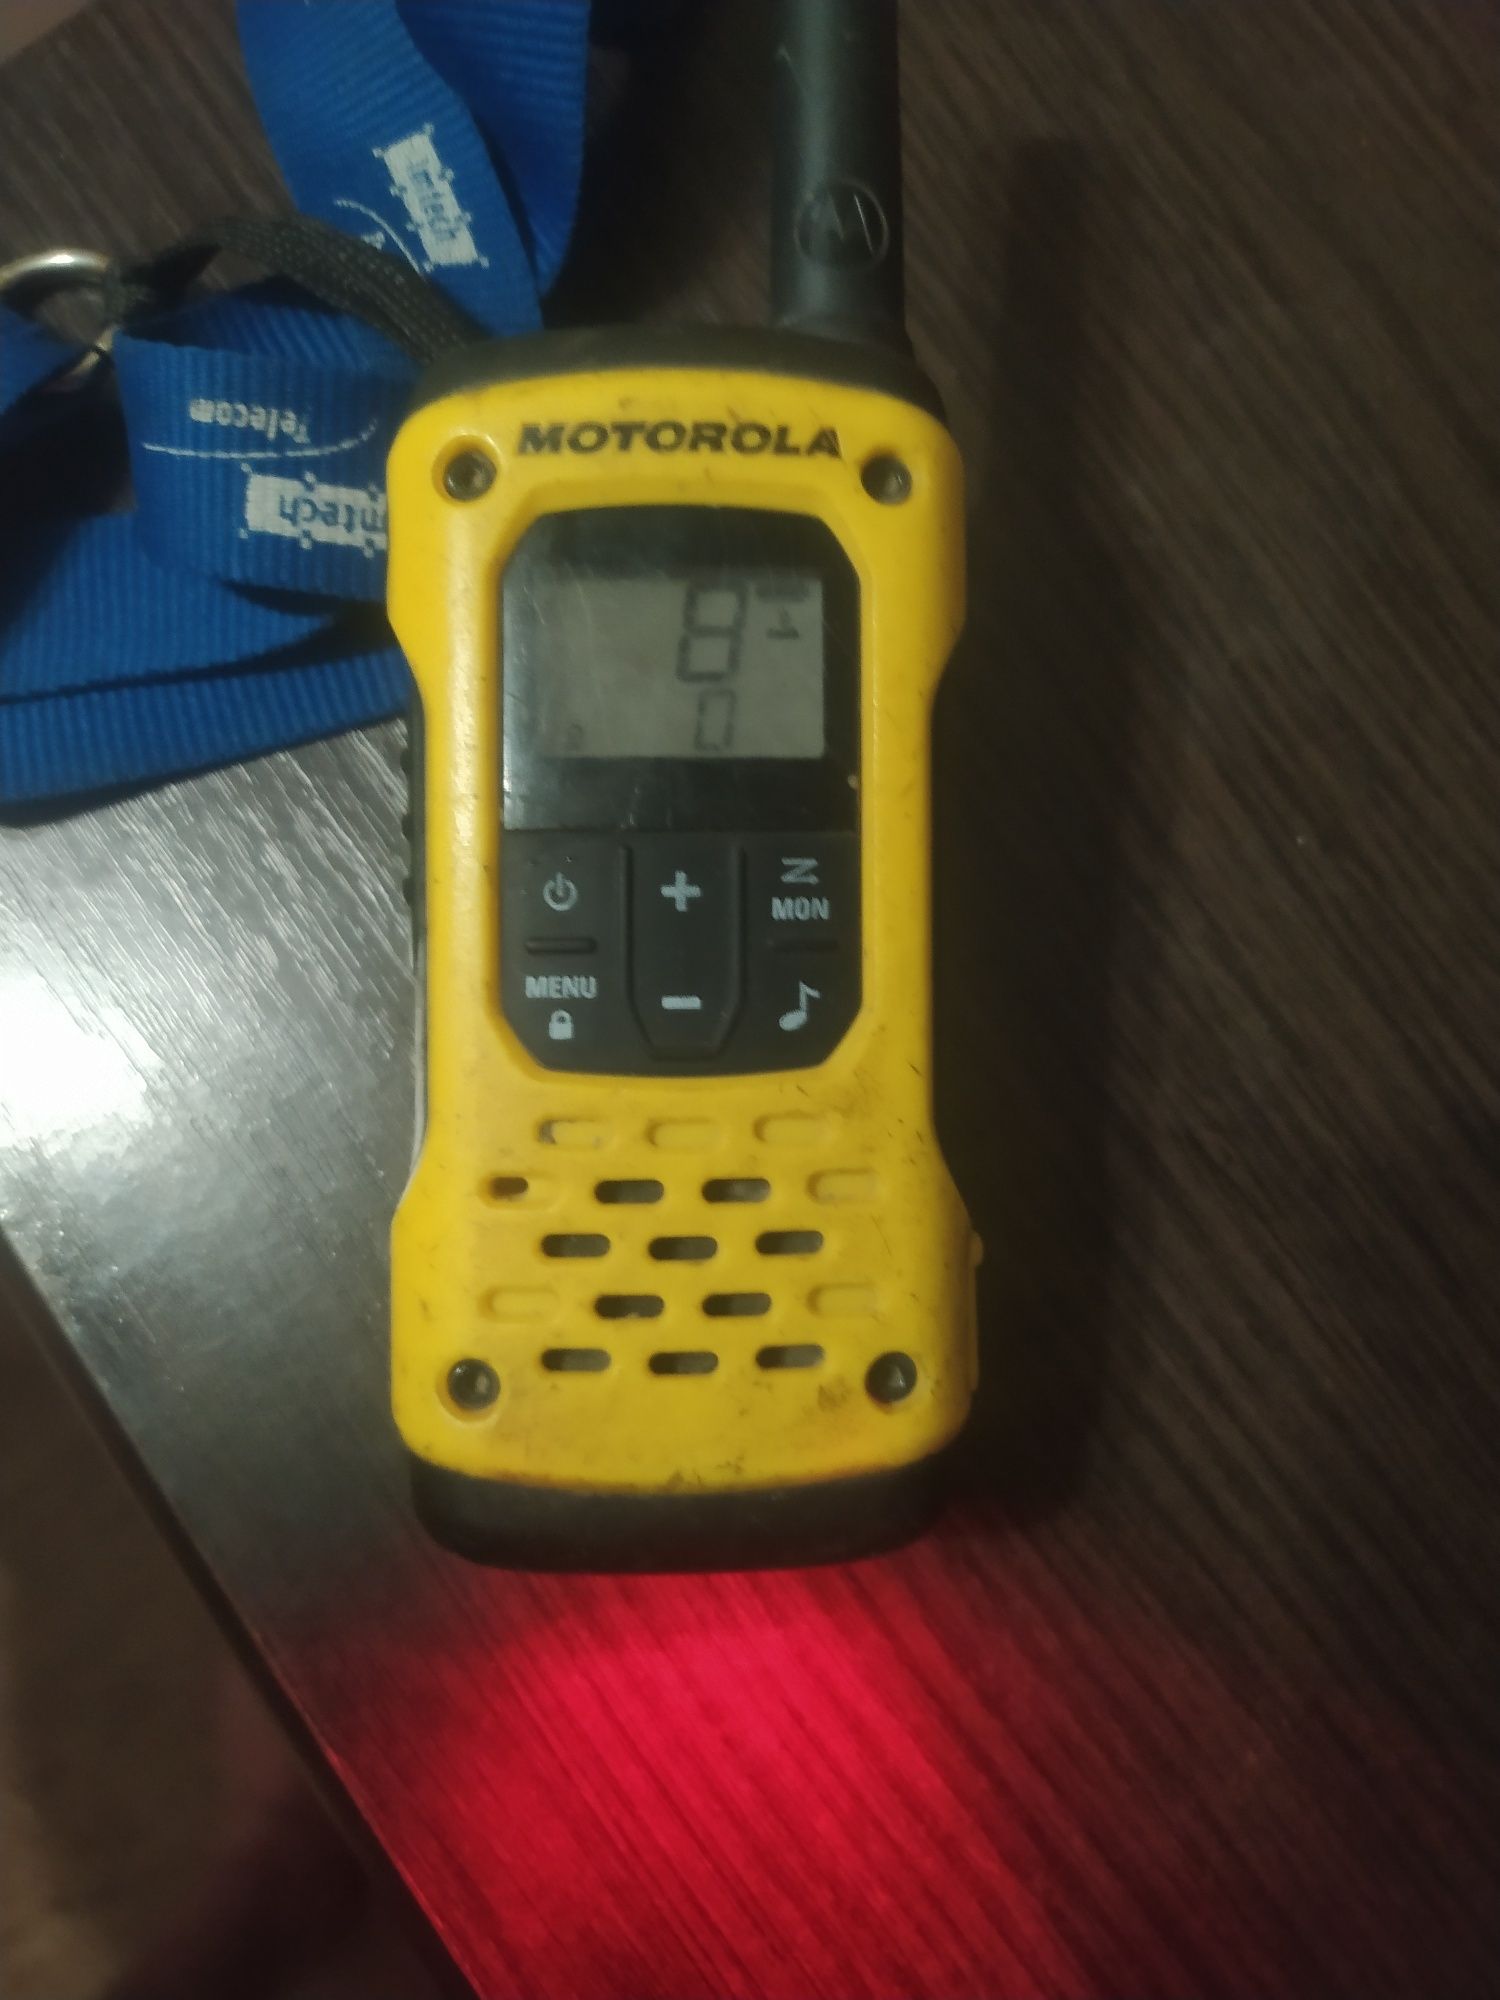 Motorola T92 H2O